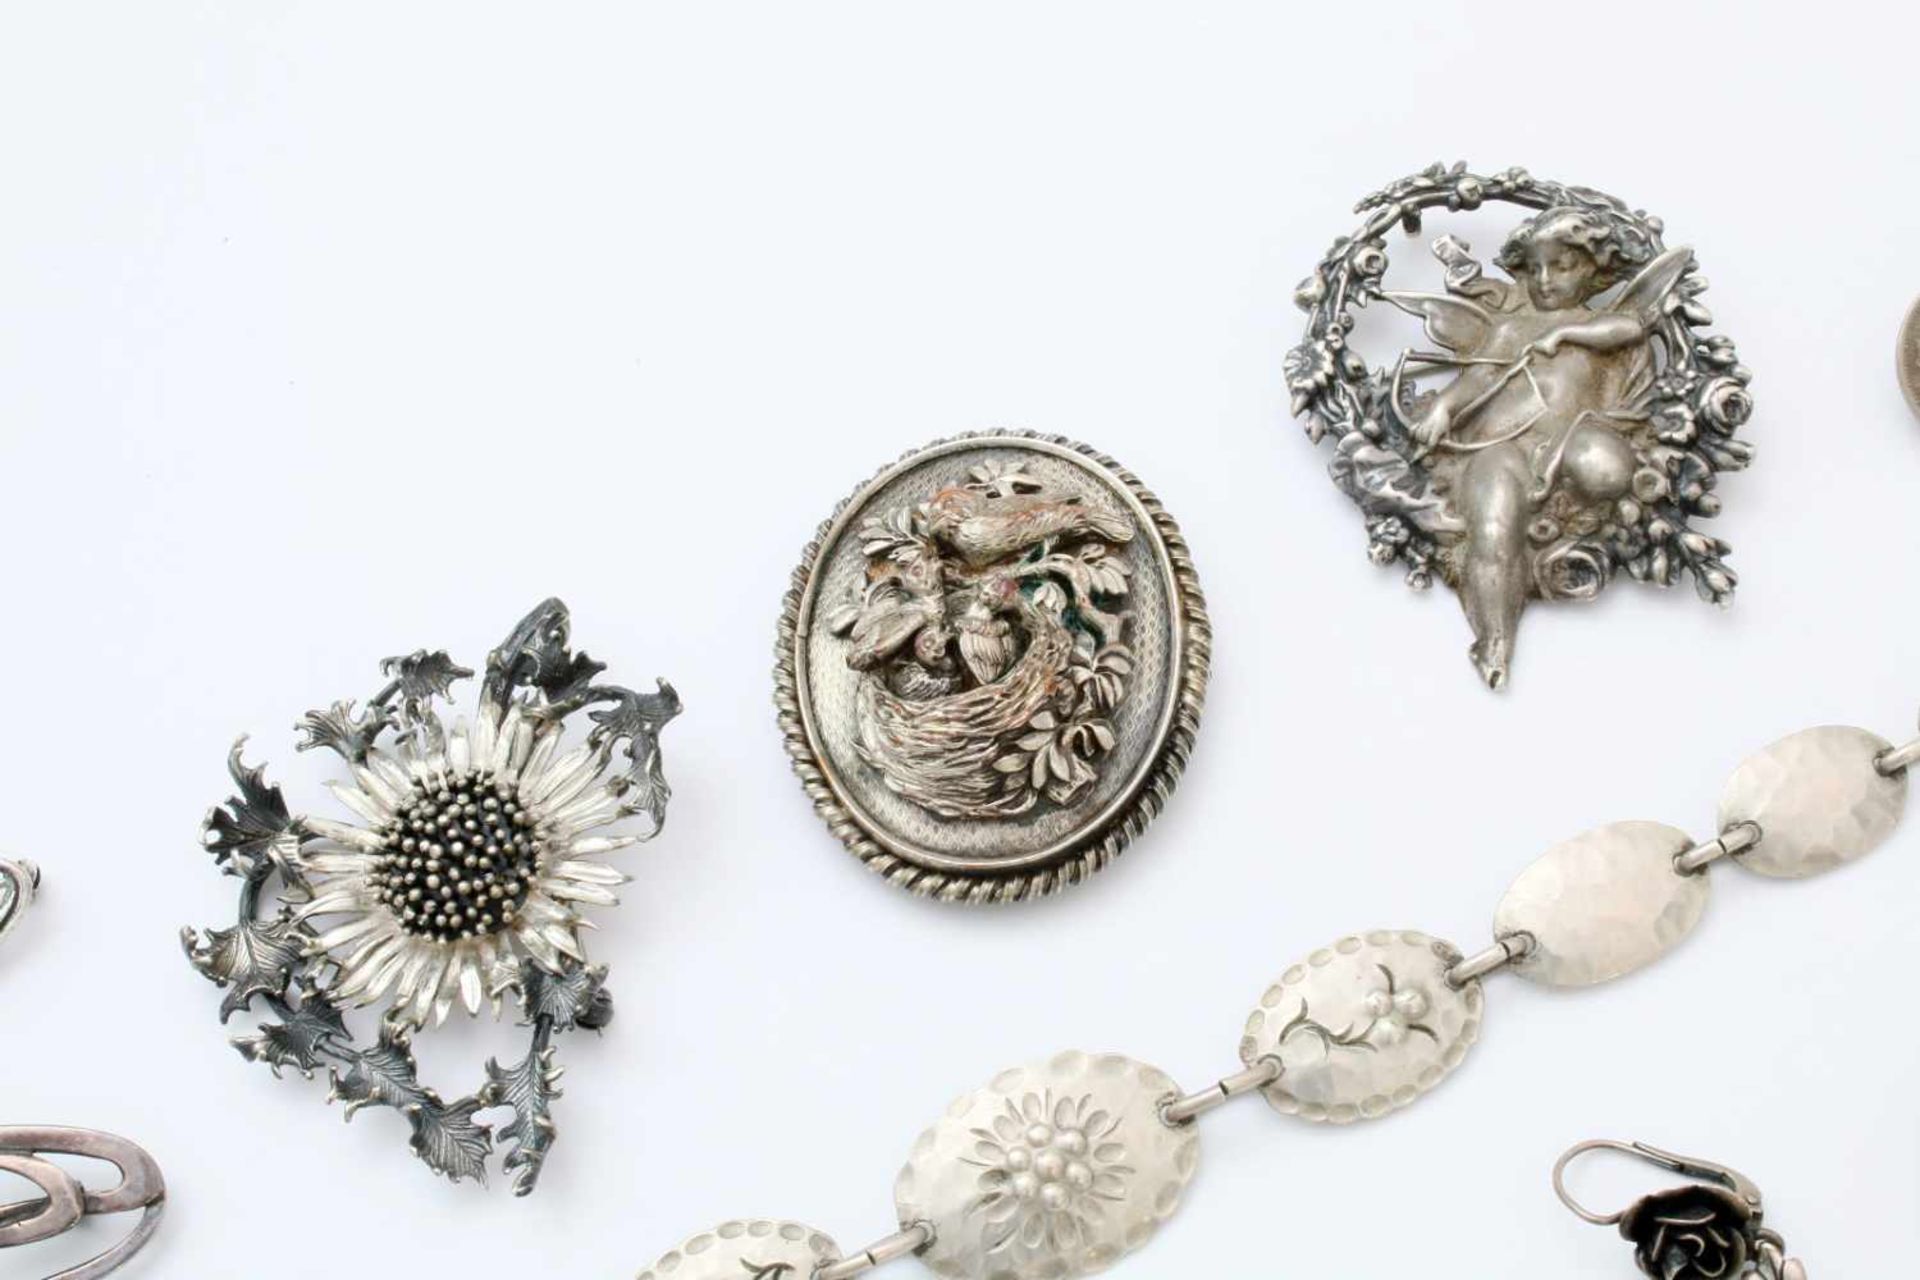 Sammlung Silberschmuck - 20 Teile 7 Broschen, 5 Paar Ohrringe, 1 Ring, 1 Armkette, 1 Anhänger, tw. - Bild 4 aus 4